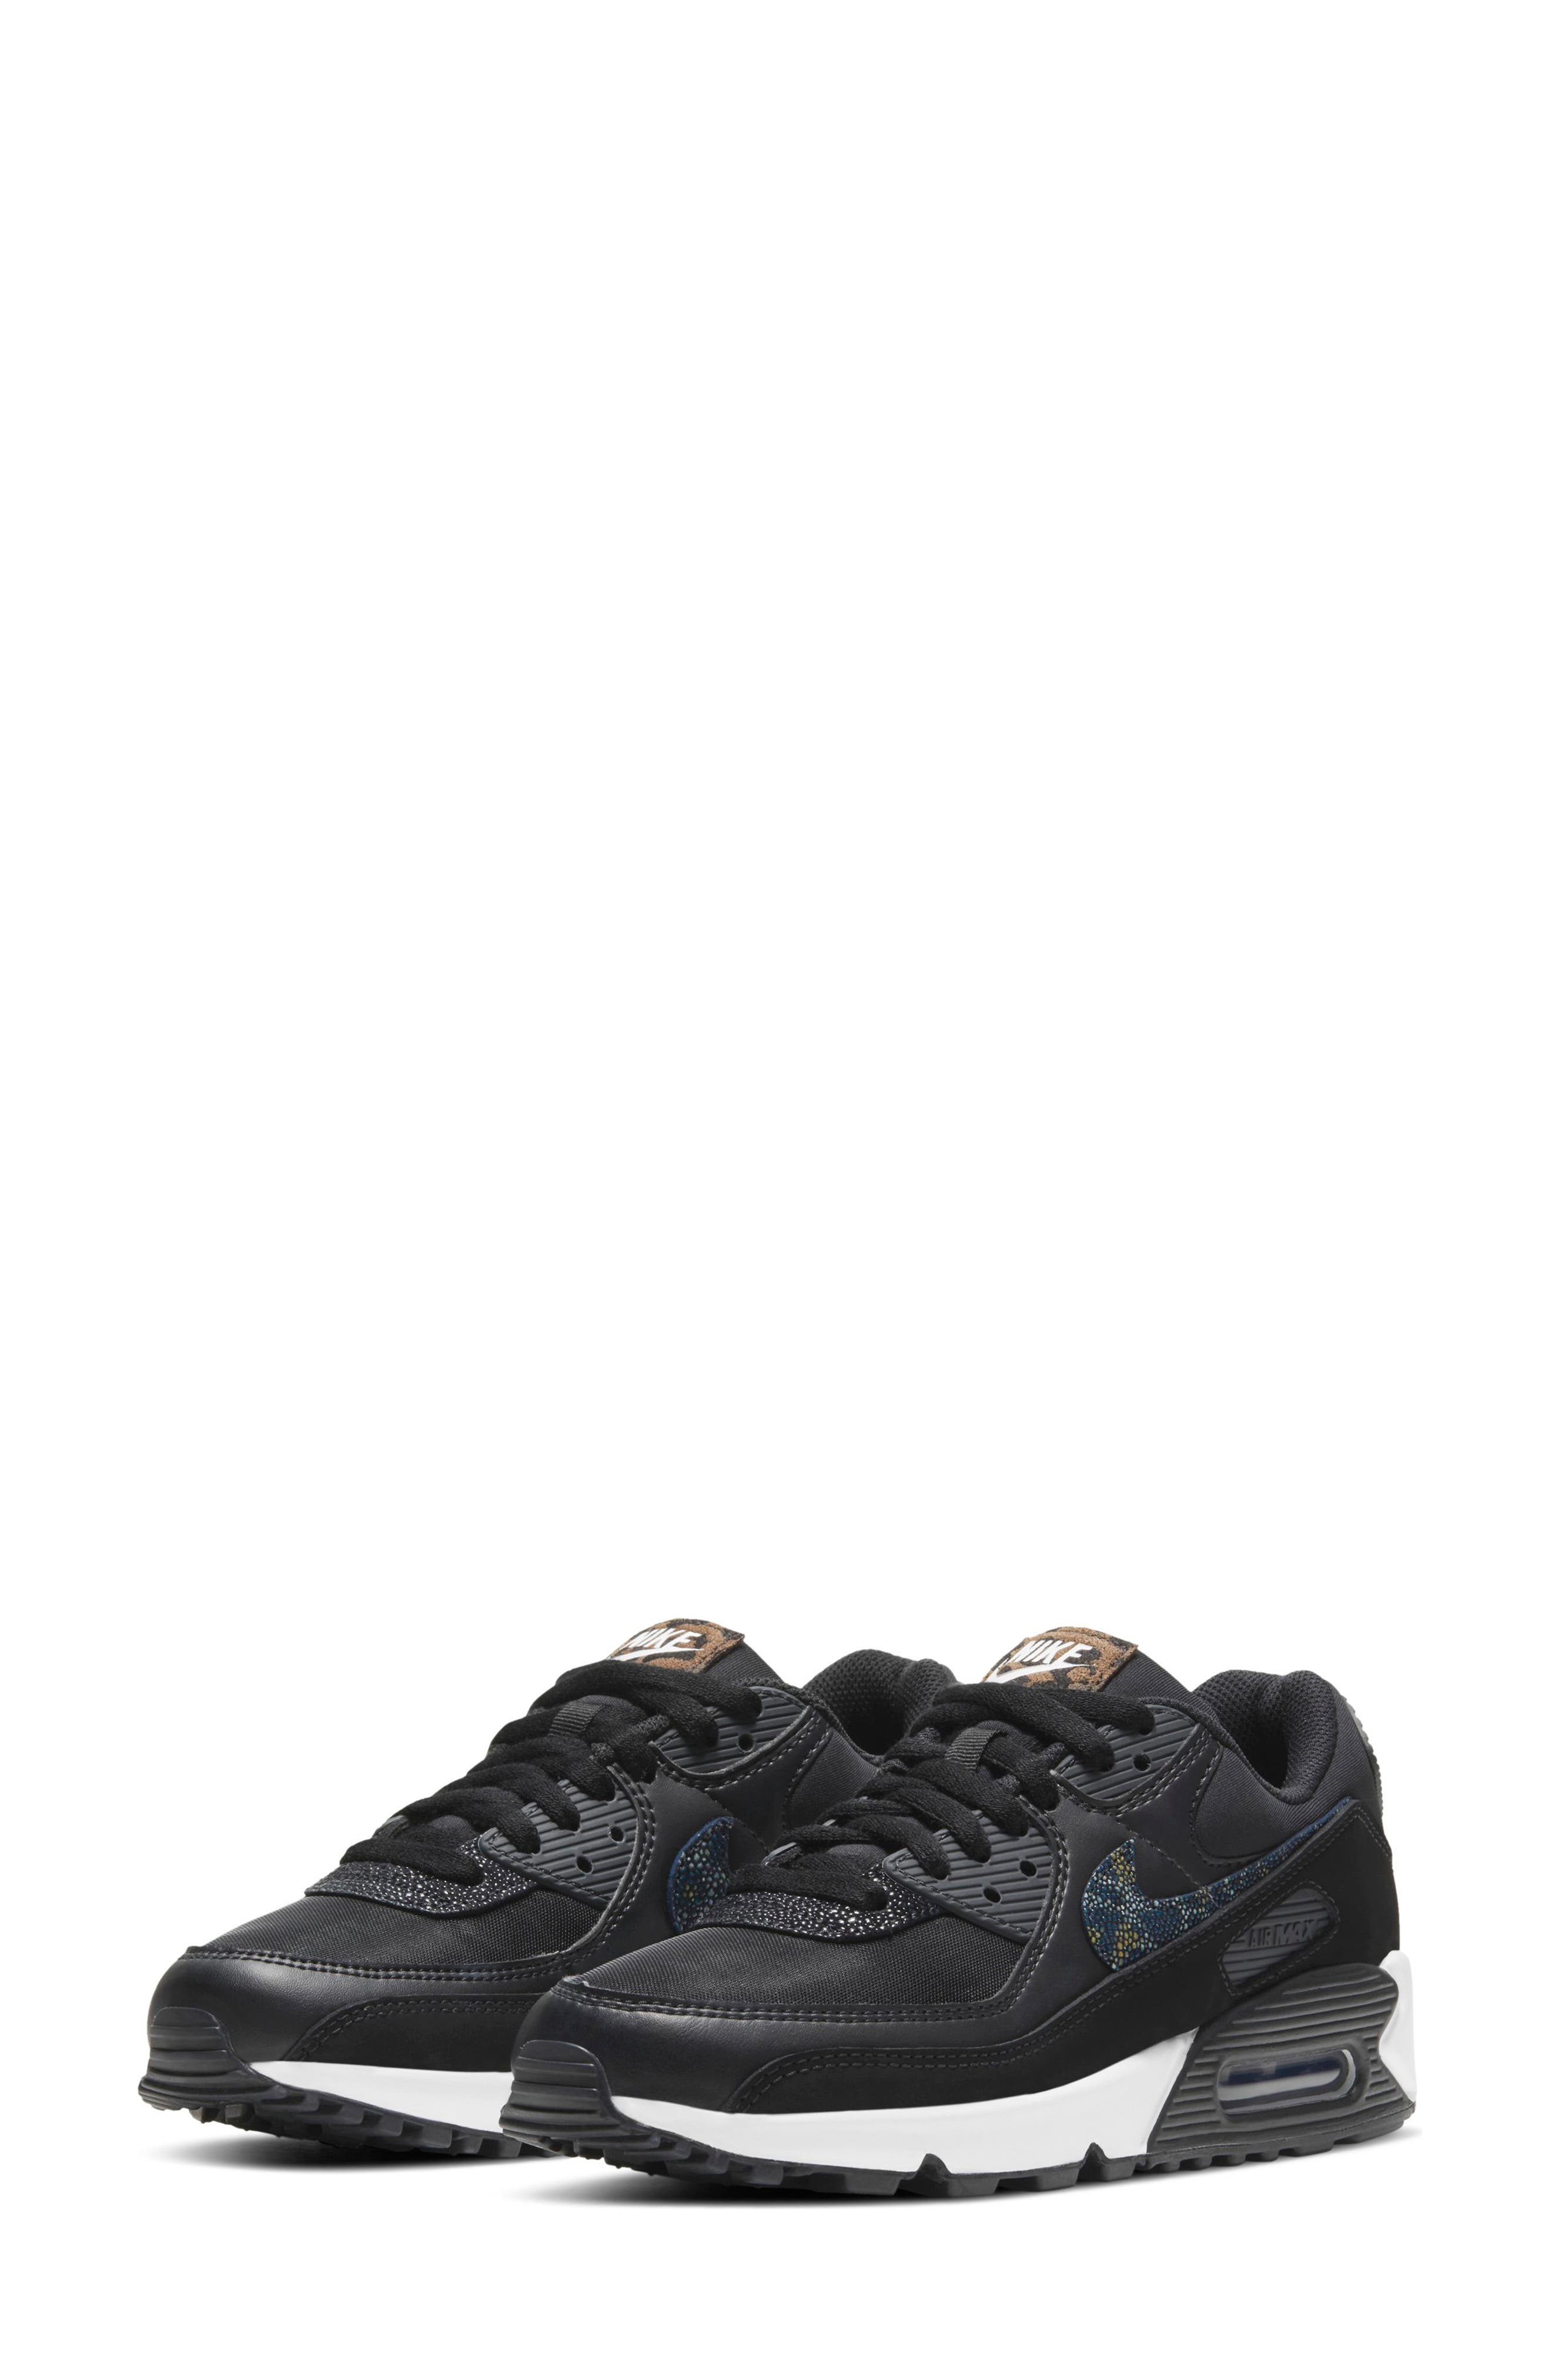 Nike Air Max 90 Se Sneaker In Black/ Black/ Off Noir/ White | ModeSens